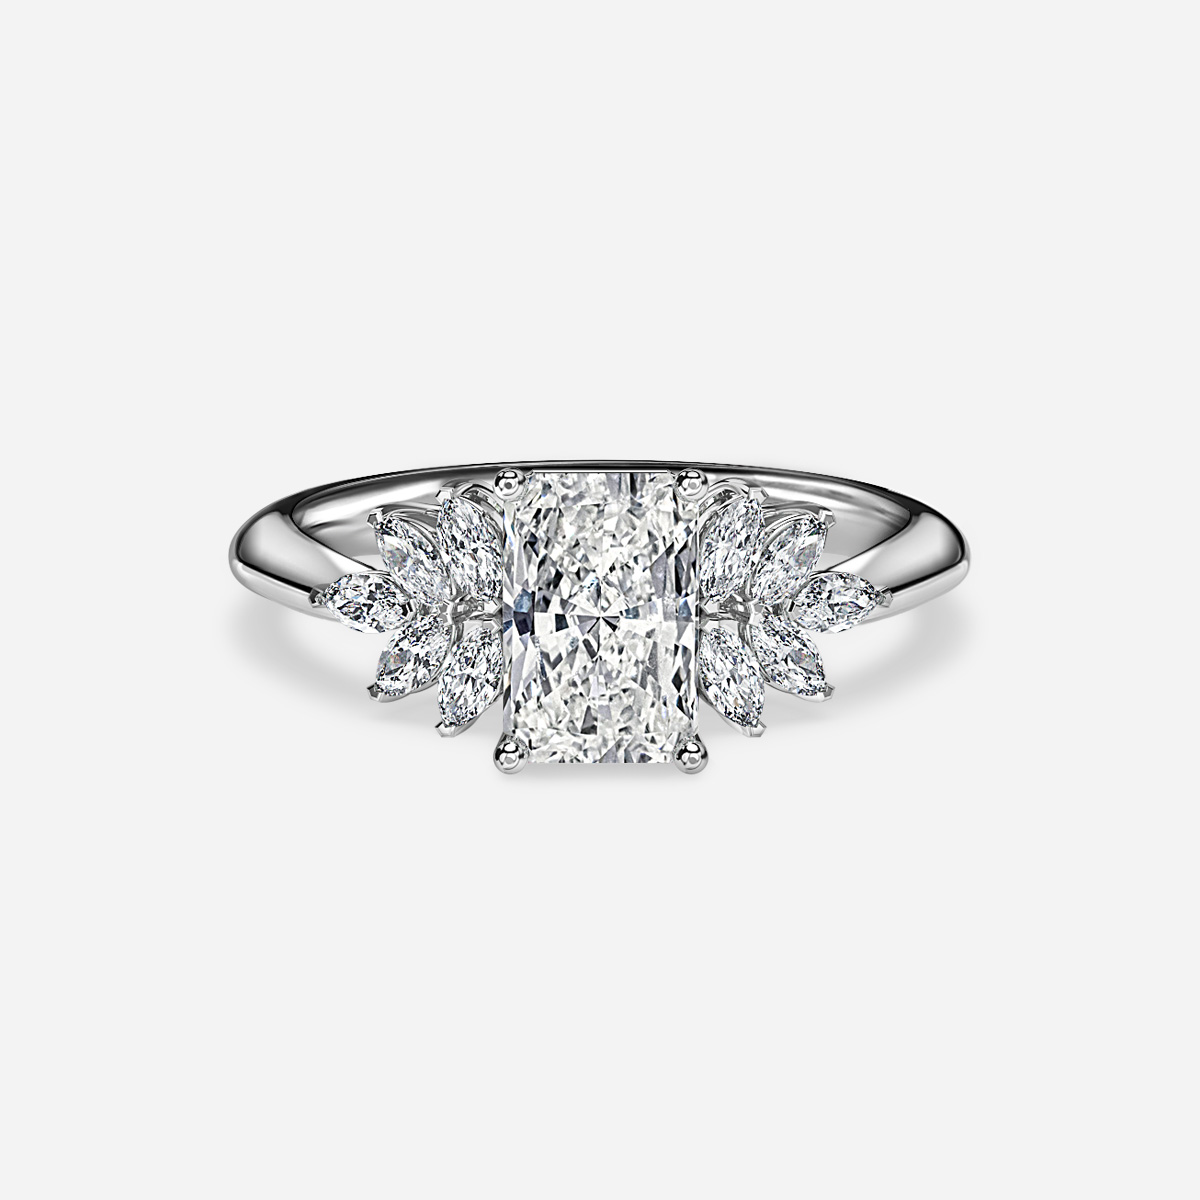 Anastasia White Gold Unique Engagement Ring